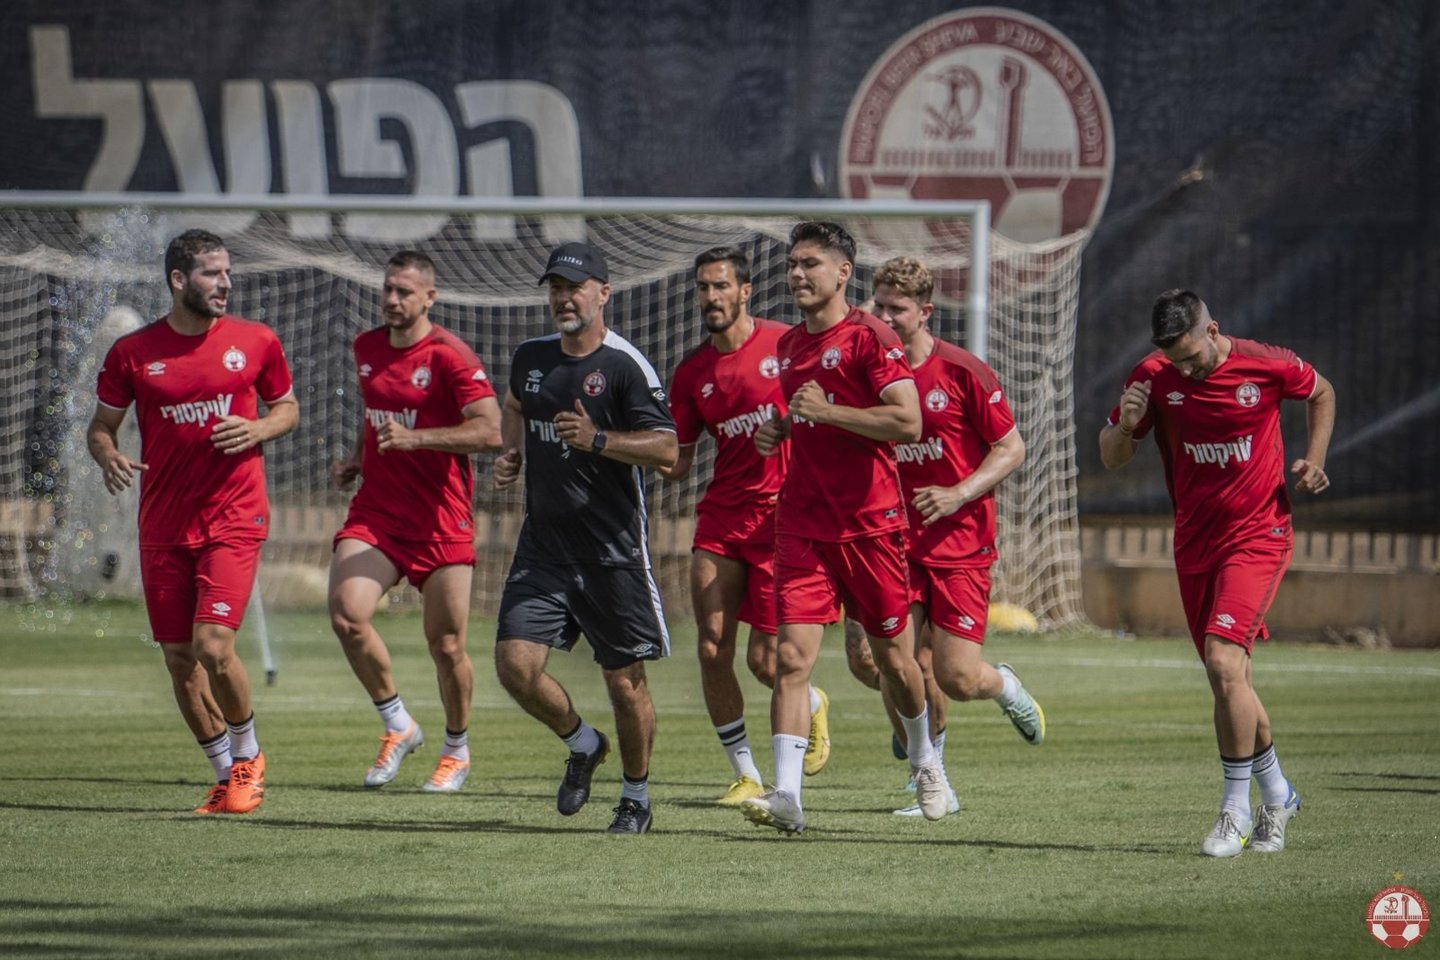  Izraelio futbolininkai<br> Hapoel Be’er Sheva